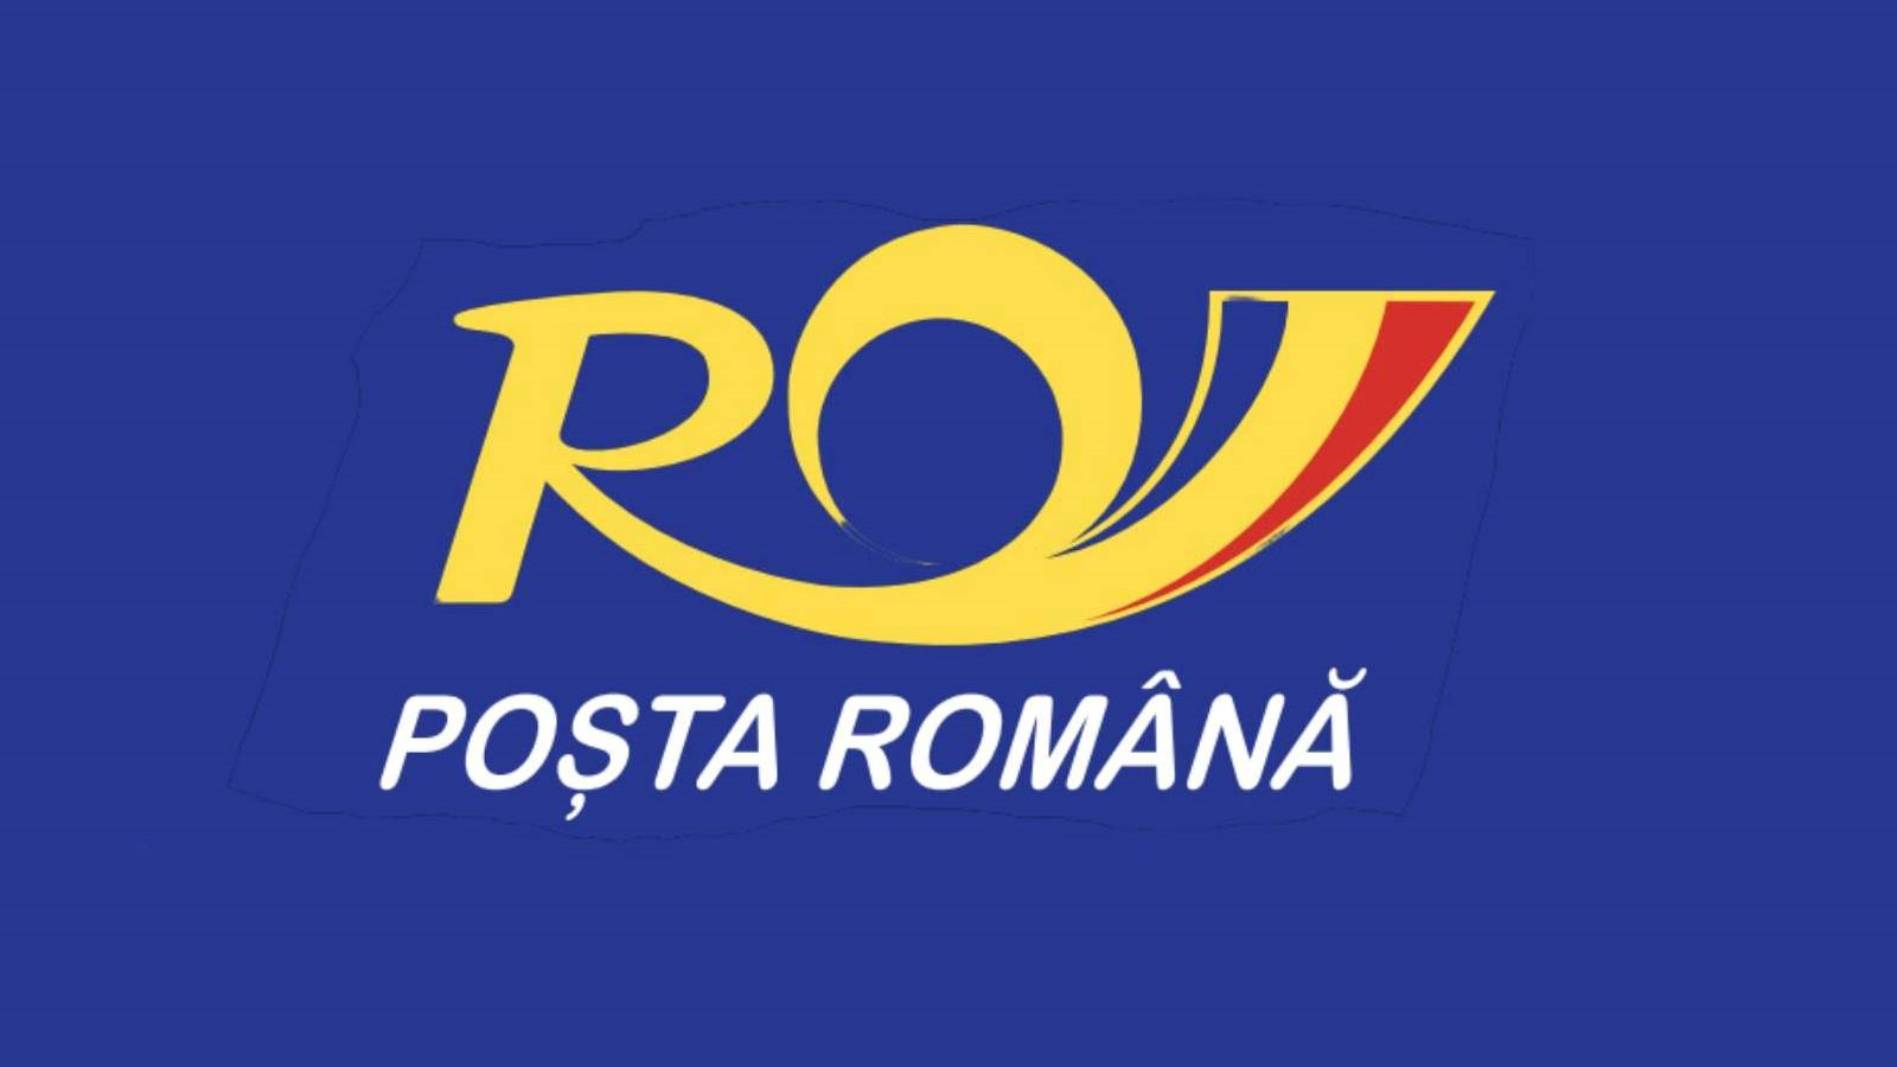 Den rumänska posten tillkännager förlängningen av energikortens giltighet